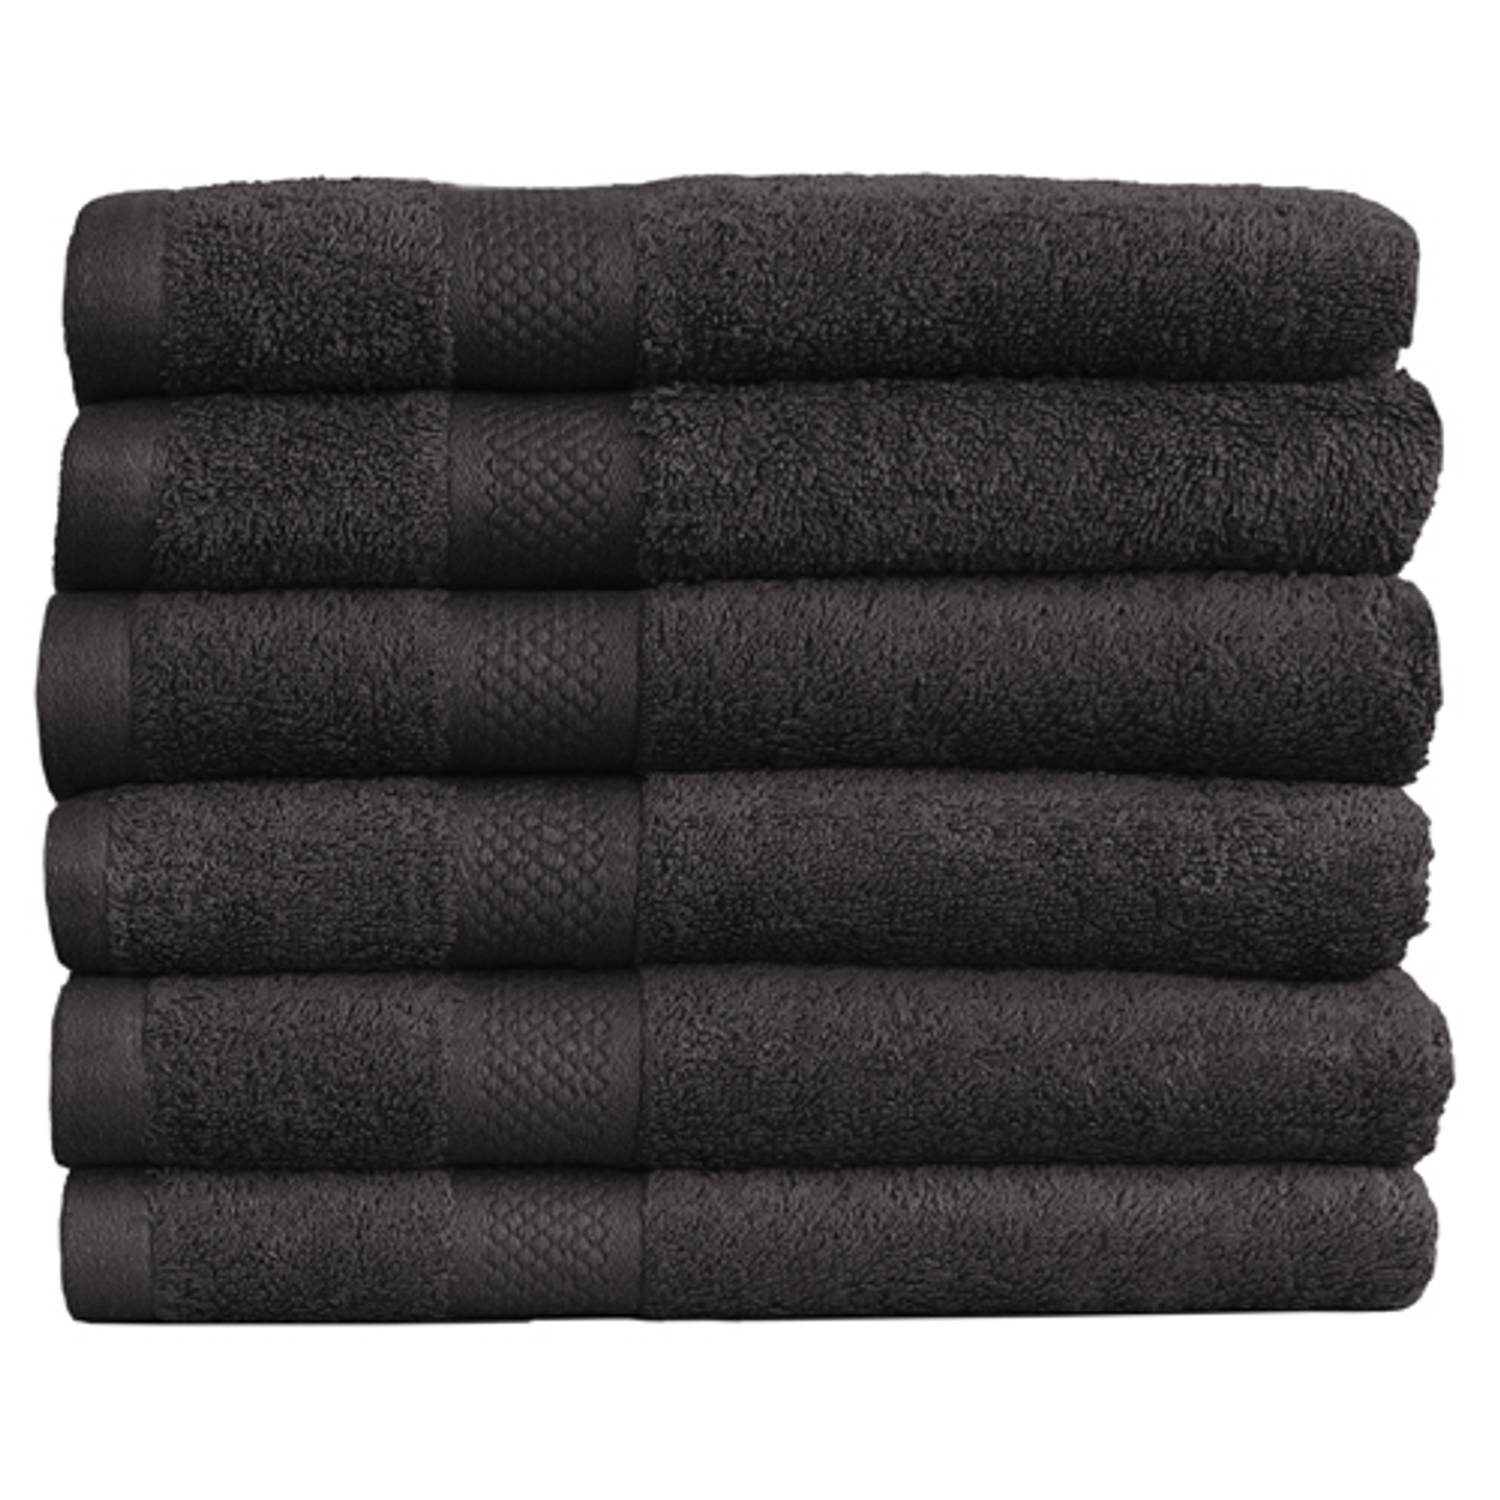 Katoenen Handdoeken Hotelkwaliteit – 6 – 70 x 140 cm – Zwart | Blokker